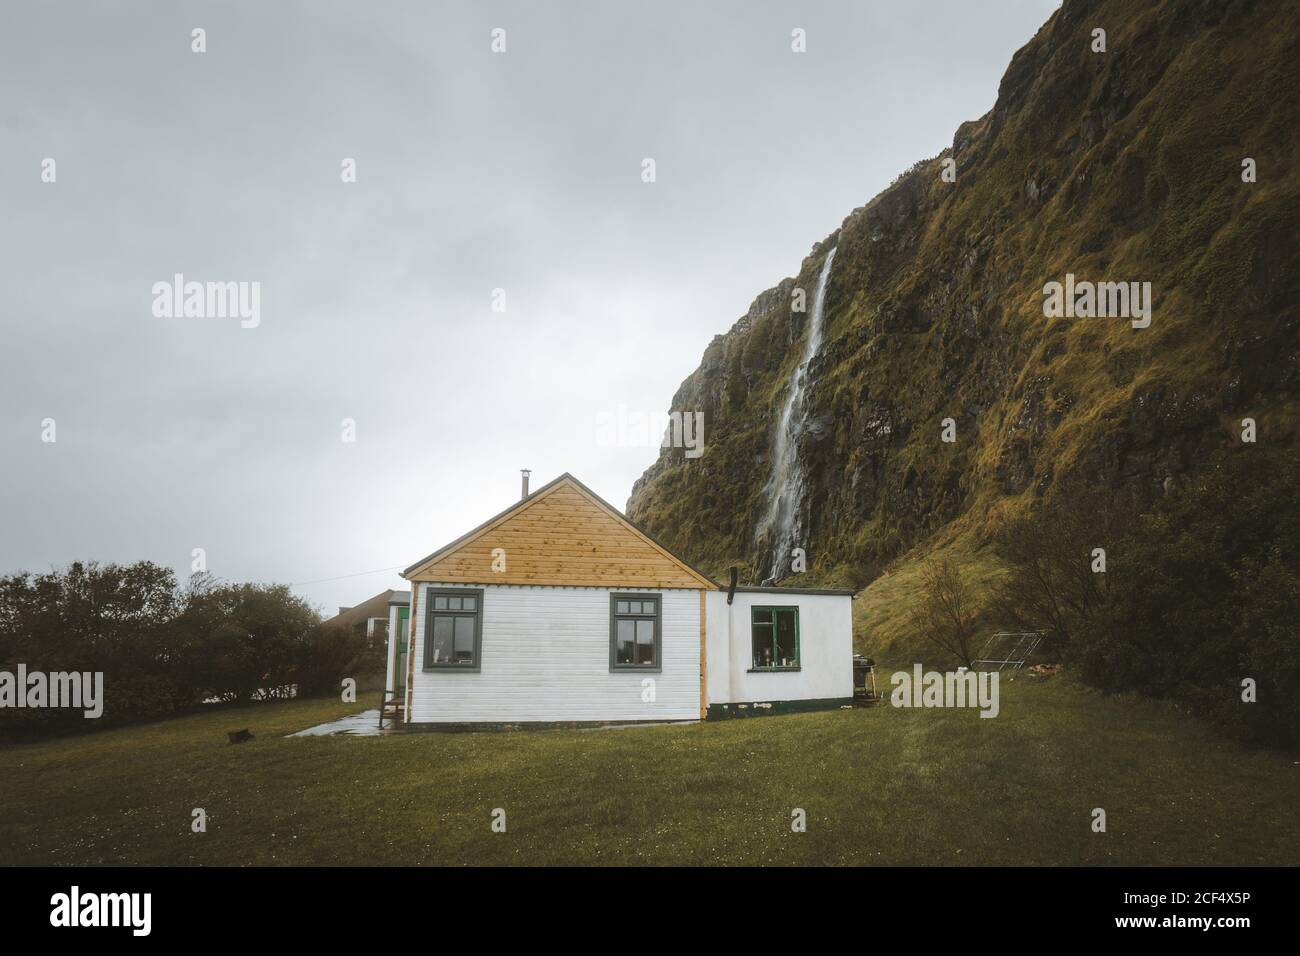 Kleines Landhaus aus Holz mit weißen Wänden und gelbem Giebeldach Dach auf grüner Wiese am Fuß der Klippe mit Wasserfall gegen grau bewölkten Himmel im Frühling Tag im Norden Irland Stockfoto